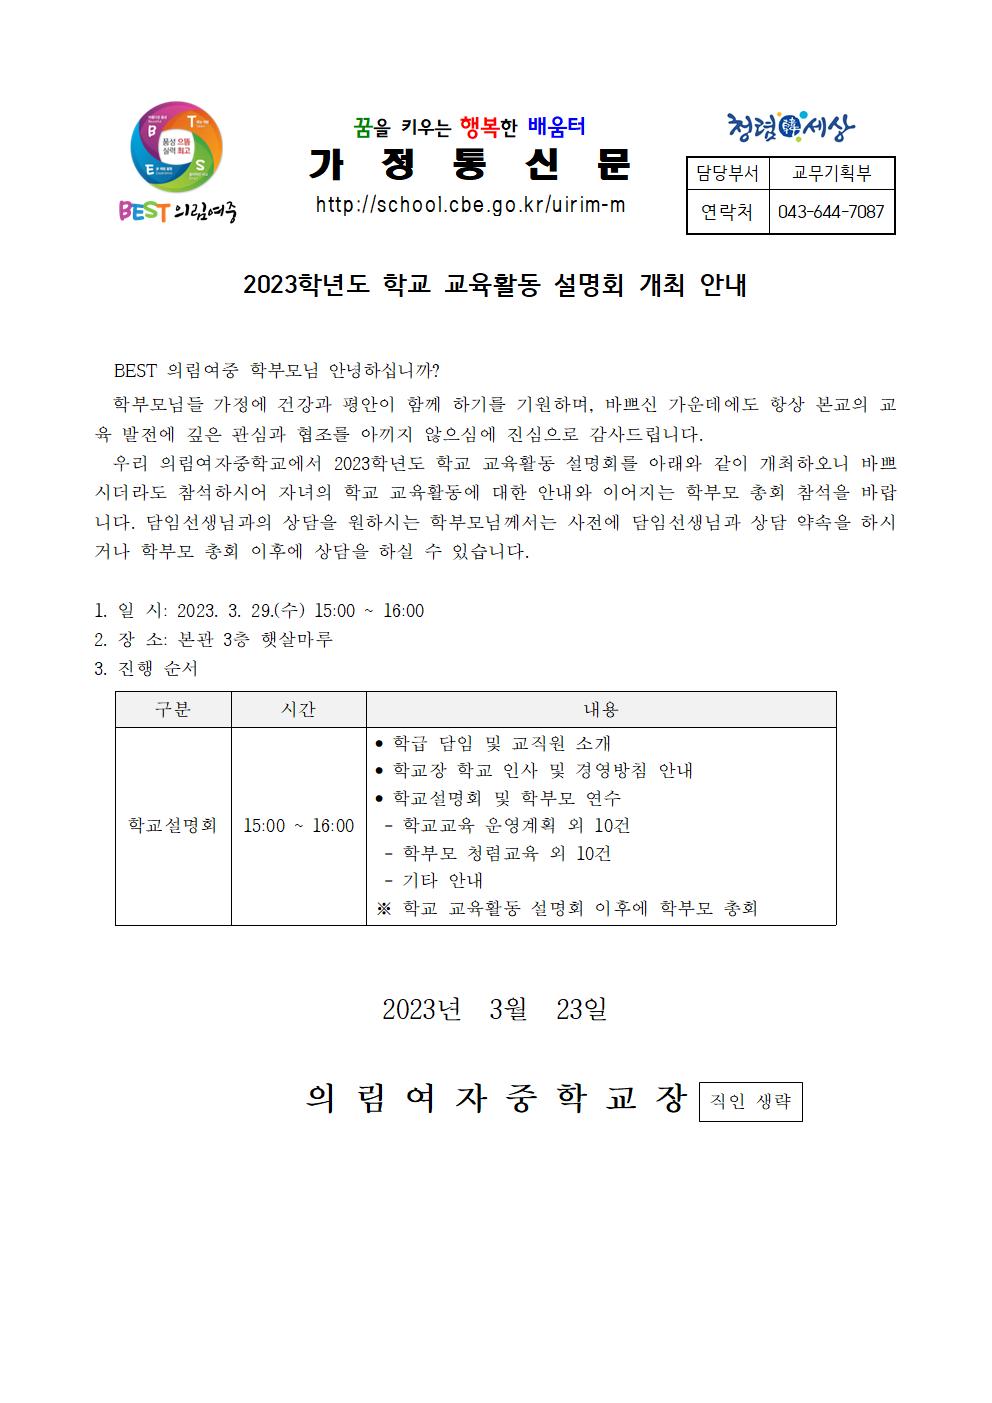 가정통신문-20230323-학교설명회개최 안내001